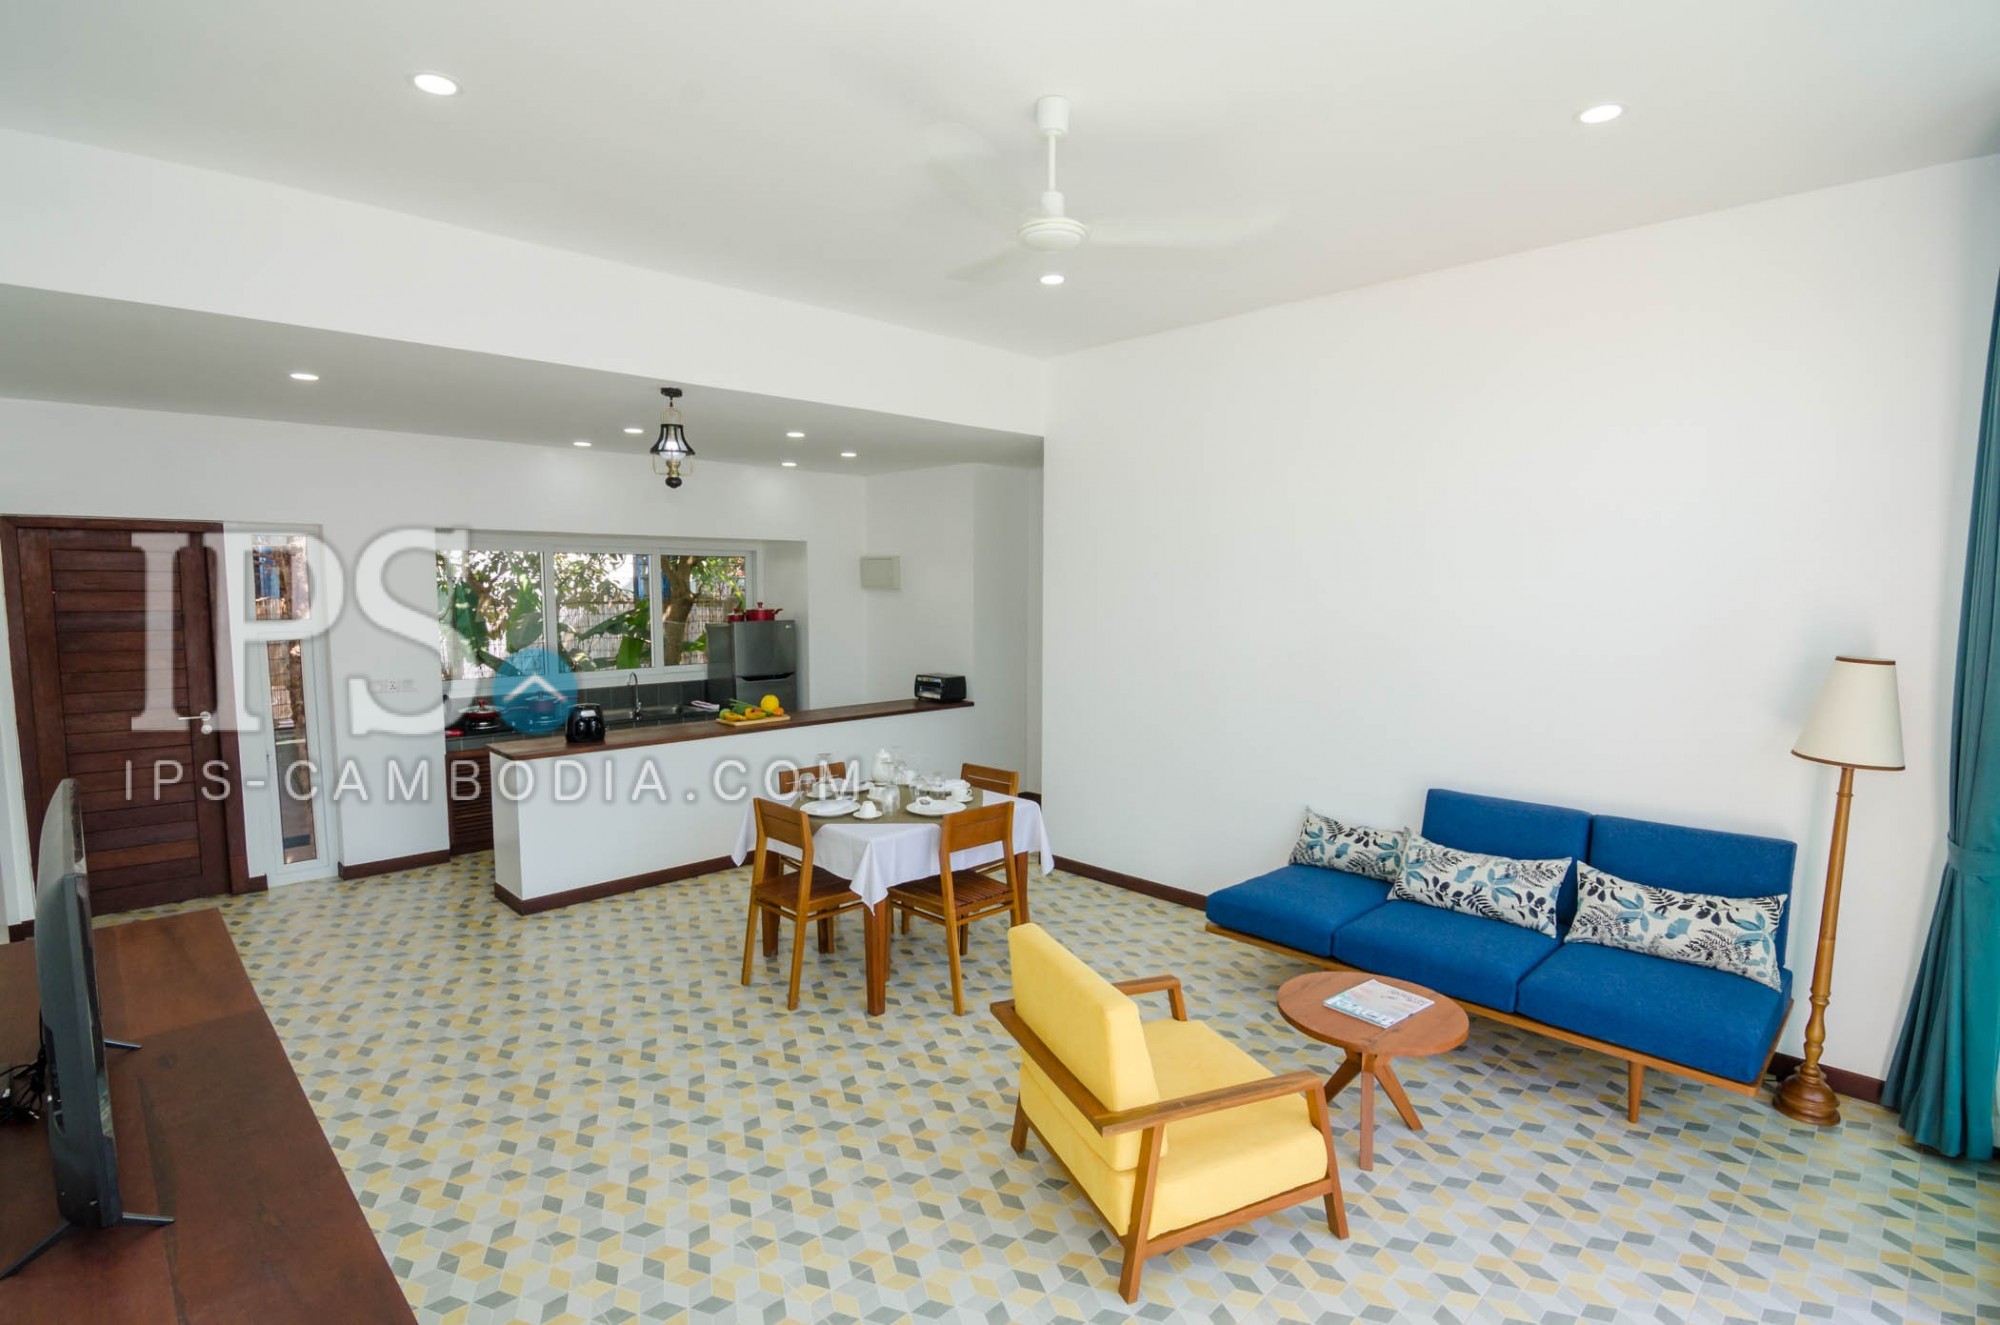 2 Bedroom Apartment For Rent - Chreav, Siem Reap